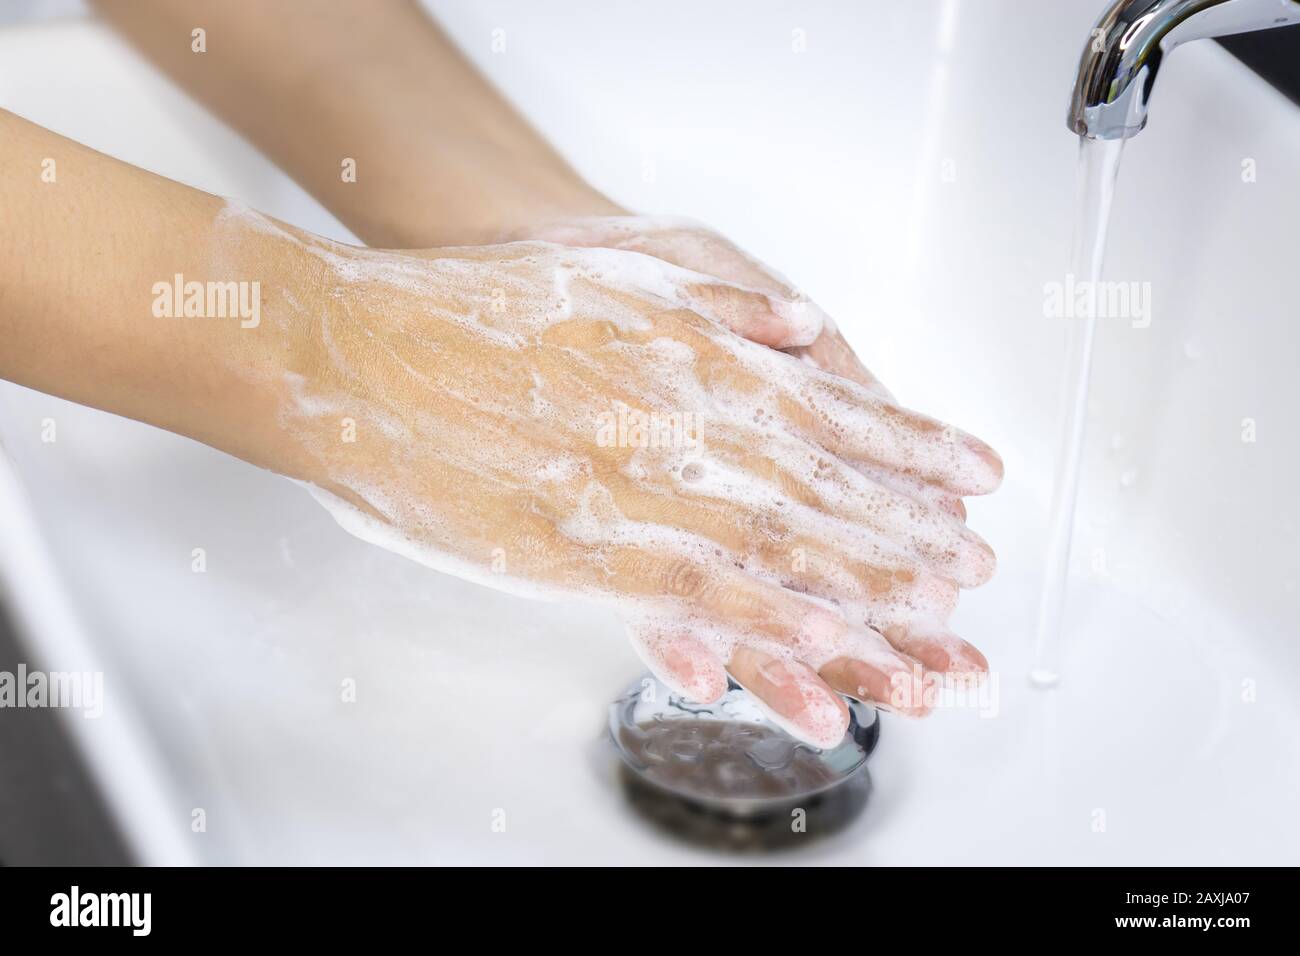 Hygienekonzept: Hände mit Seife in Waschbecken waschen, sauber halten, um vor Viren- und Bakterienerkrankungen zu schützen Stockfoto